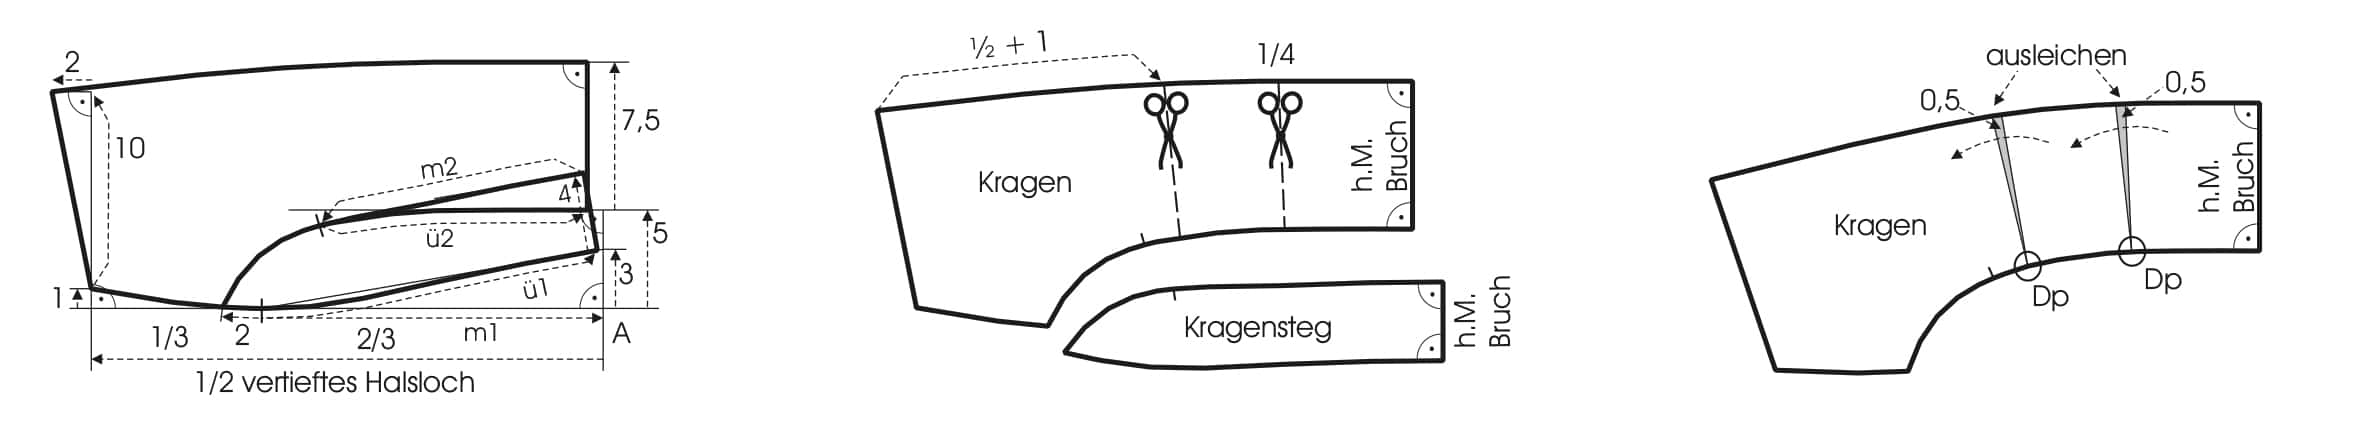 Die Abbildung zeigt die Schnittkonstruktion eines Kragens für eine Jacke mit Reißverschlüssen.